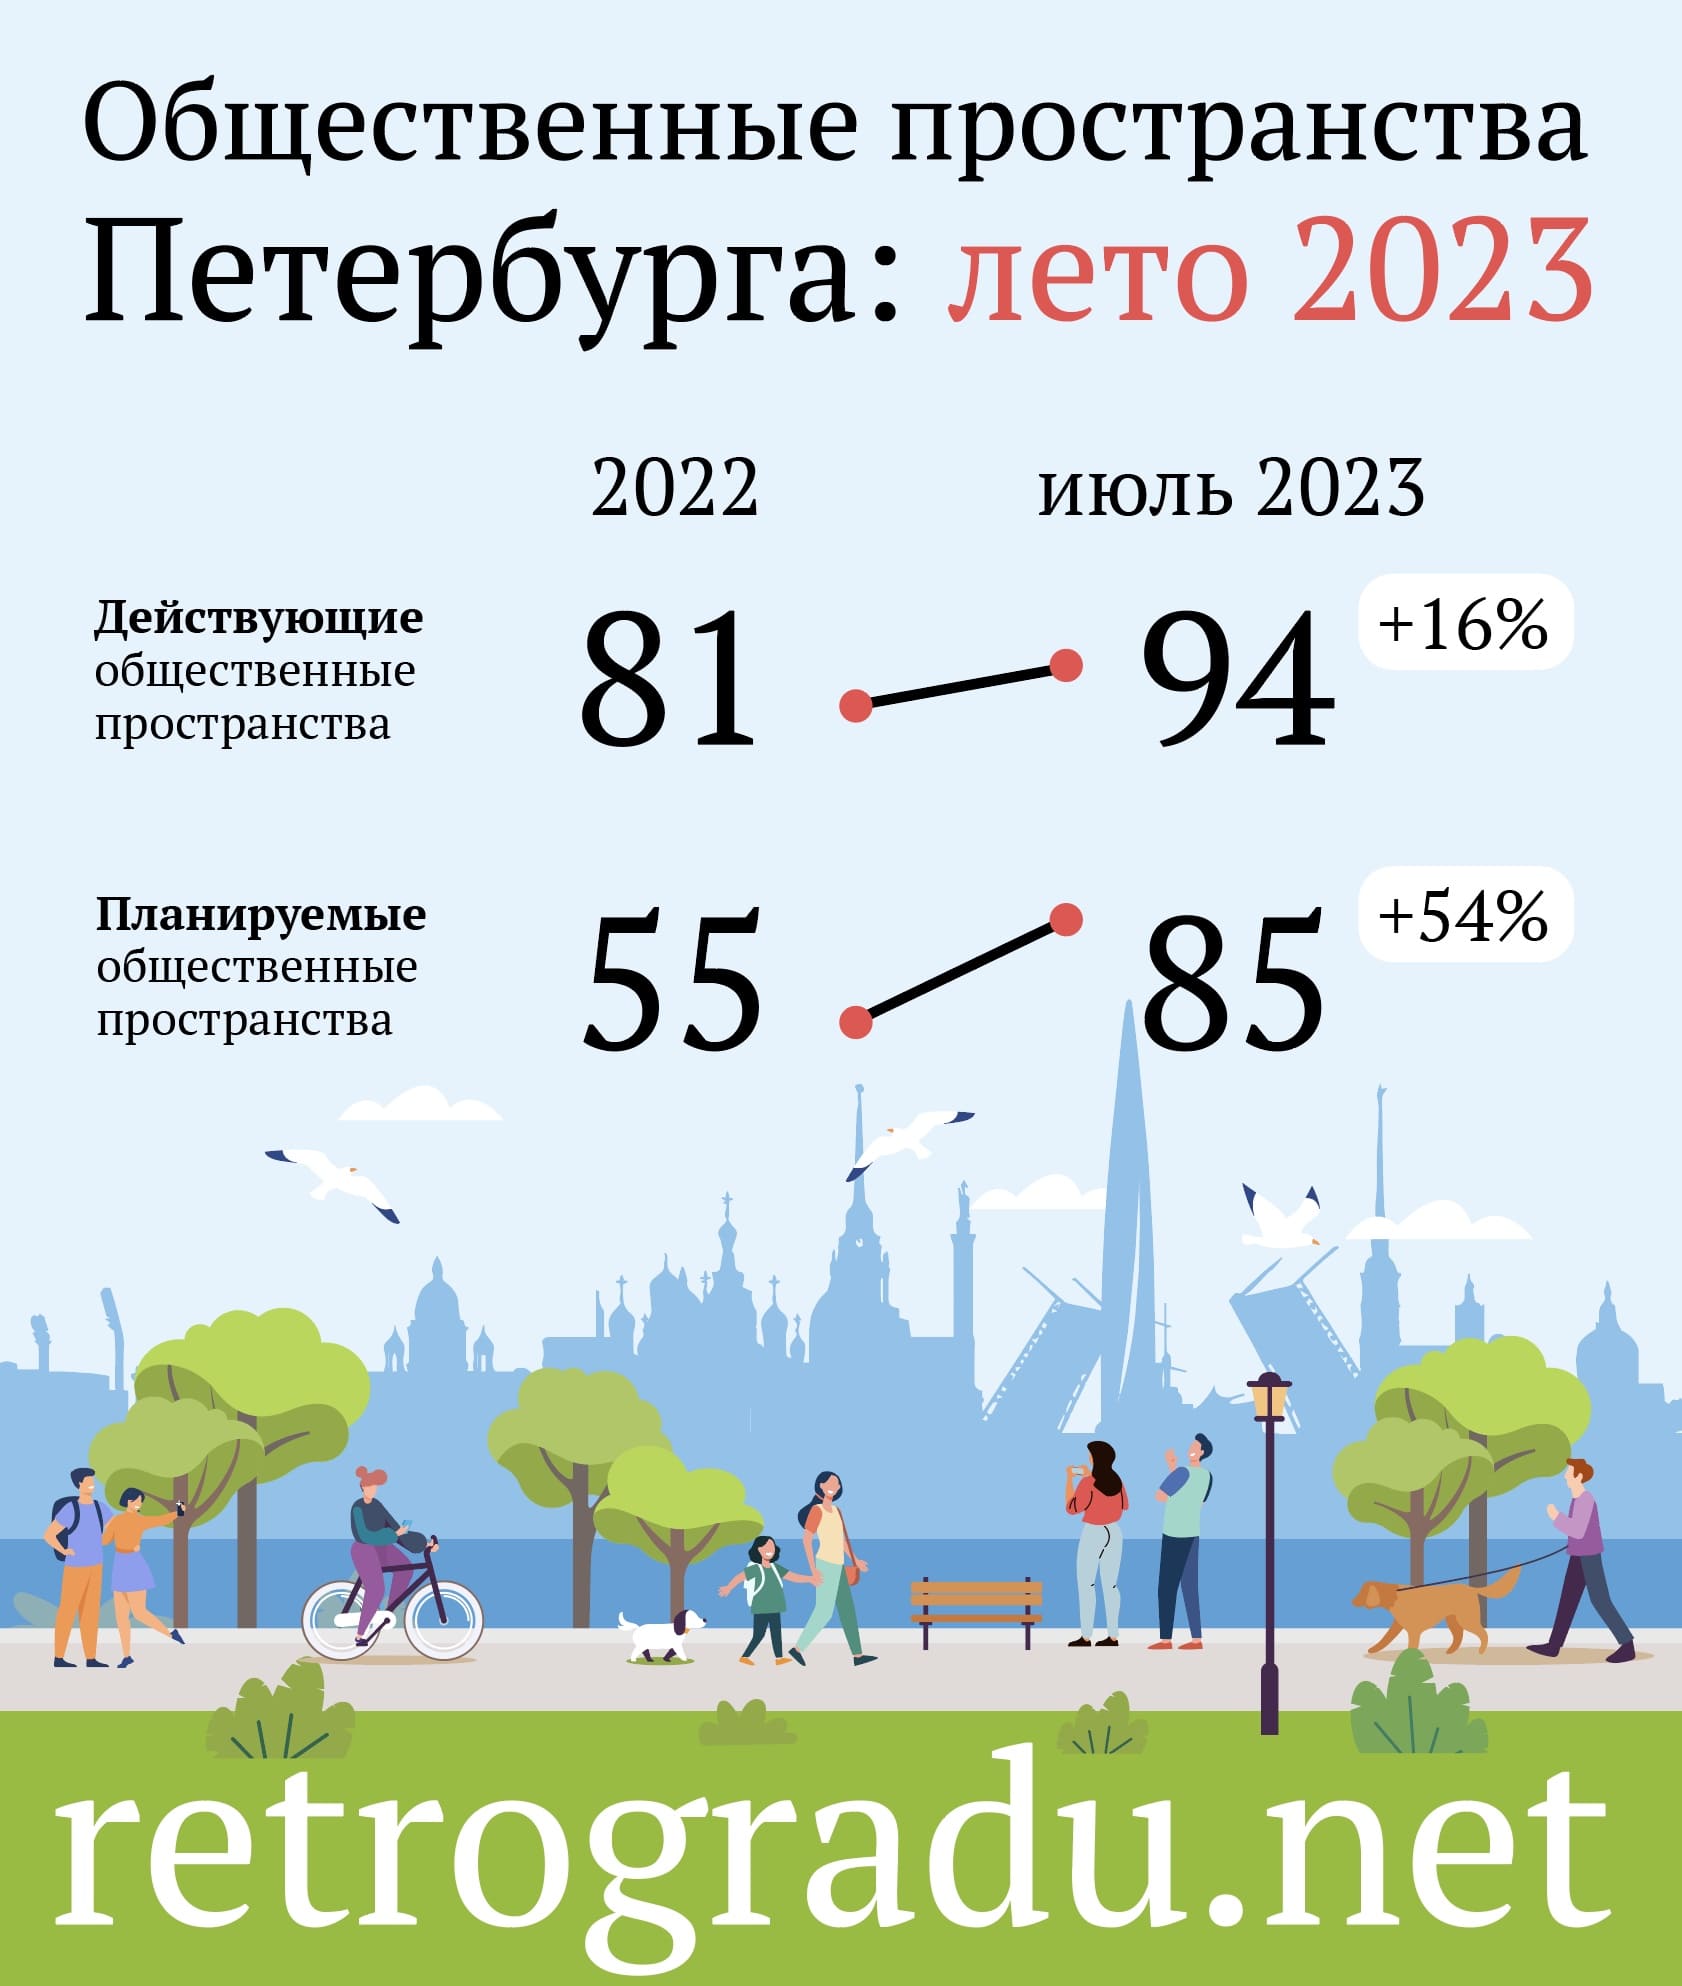 За январь—июнь 2023 года в Петербурге открылось 13 новых общественных пространств